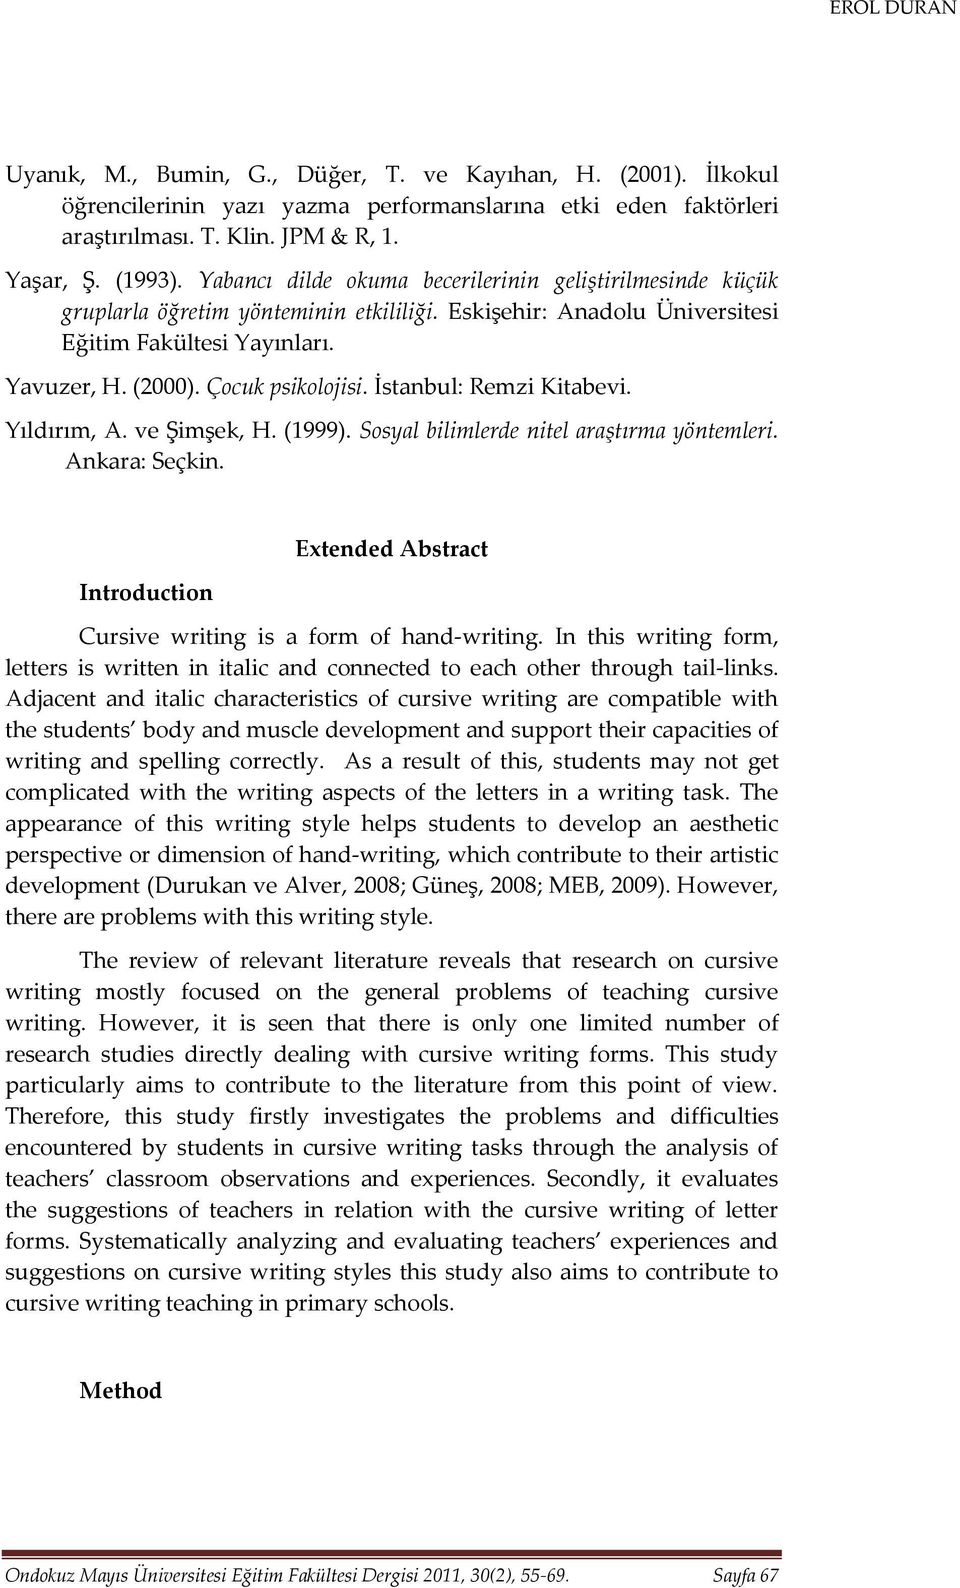 İstanbul: Remzi Kitabevi. Yıldırım, A. ve Şimşek, H. (1999). Sosyal bilimlerde nitel araştırma yöntemleri. Ankara: Seçkin. Introduction Extended Abstract Cursive writing is a form of hand-writing.